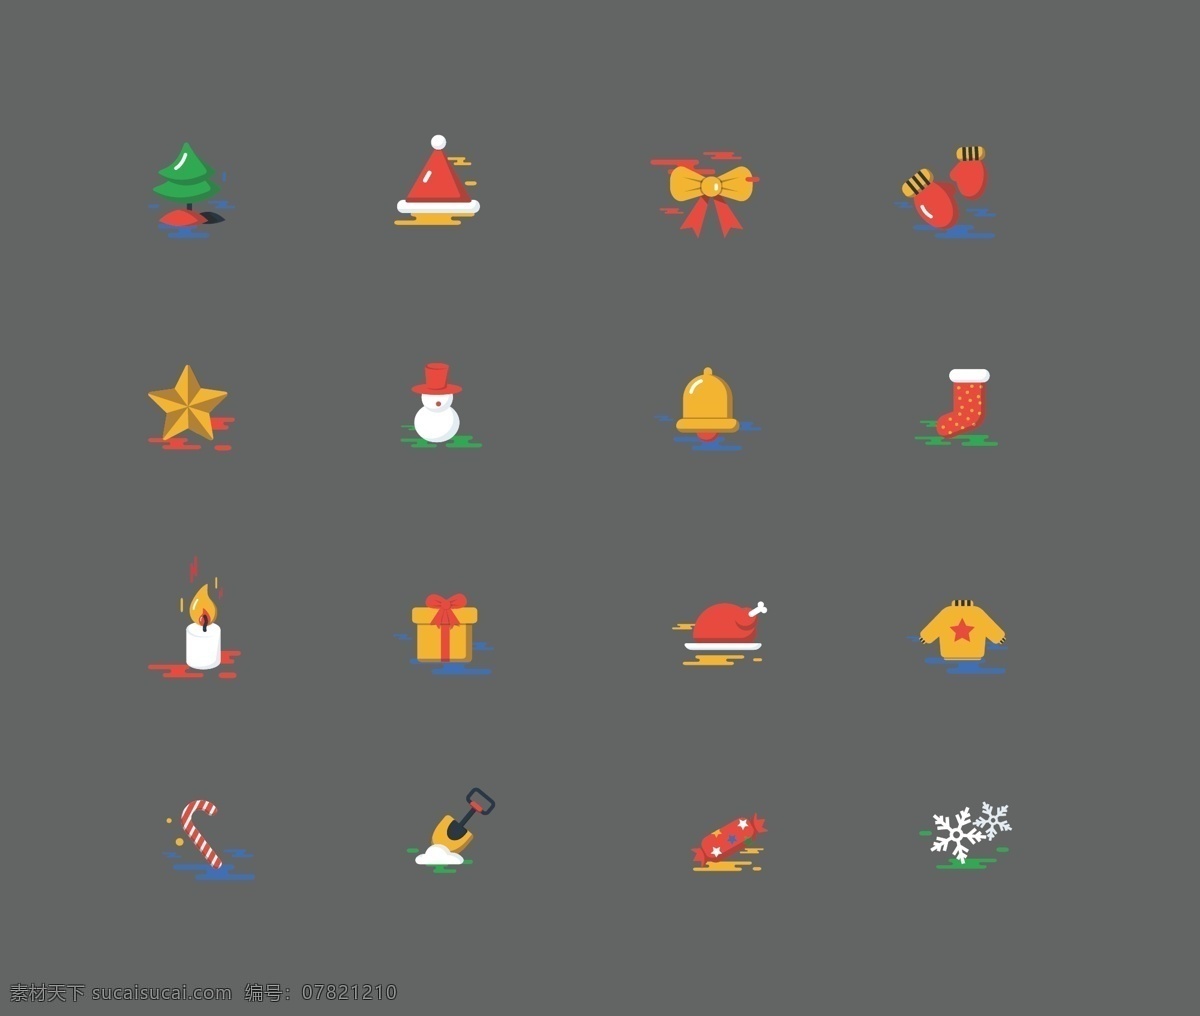 扁平化 圣诞节 图标 元素 圣诞老人 圣诞树 雪花 袜子 icon 雪人 圣诞贺卡 圣诞礼物 蜡烛 火鸡 魔术棒 雪橇